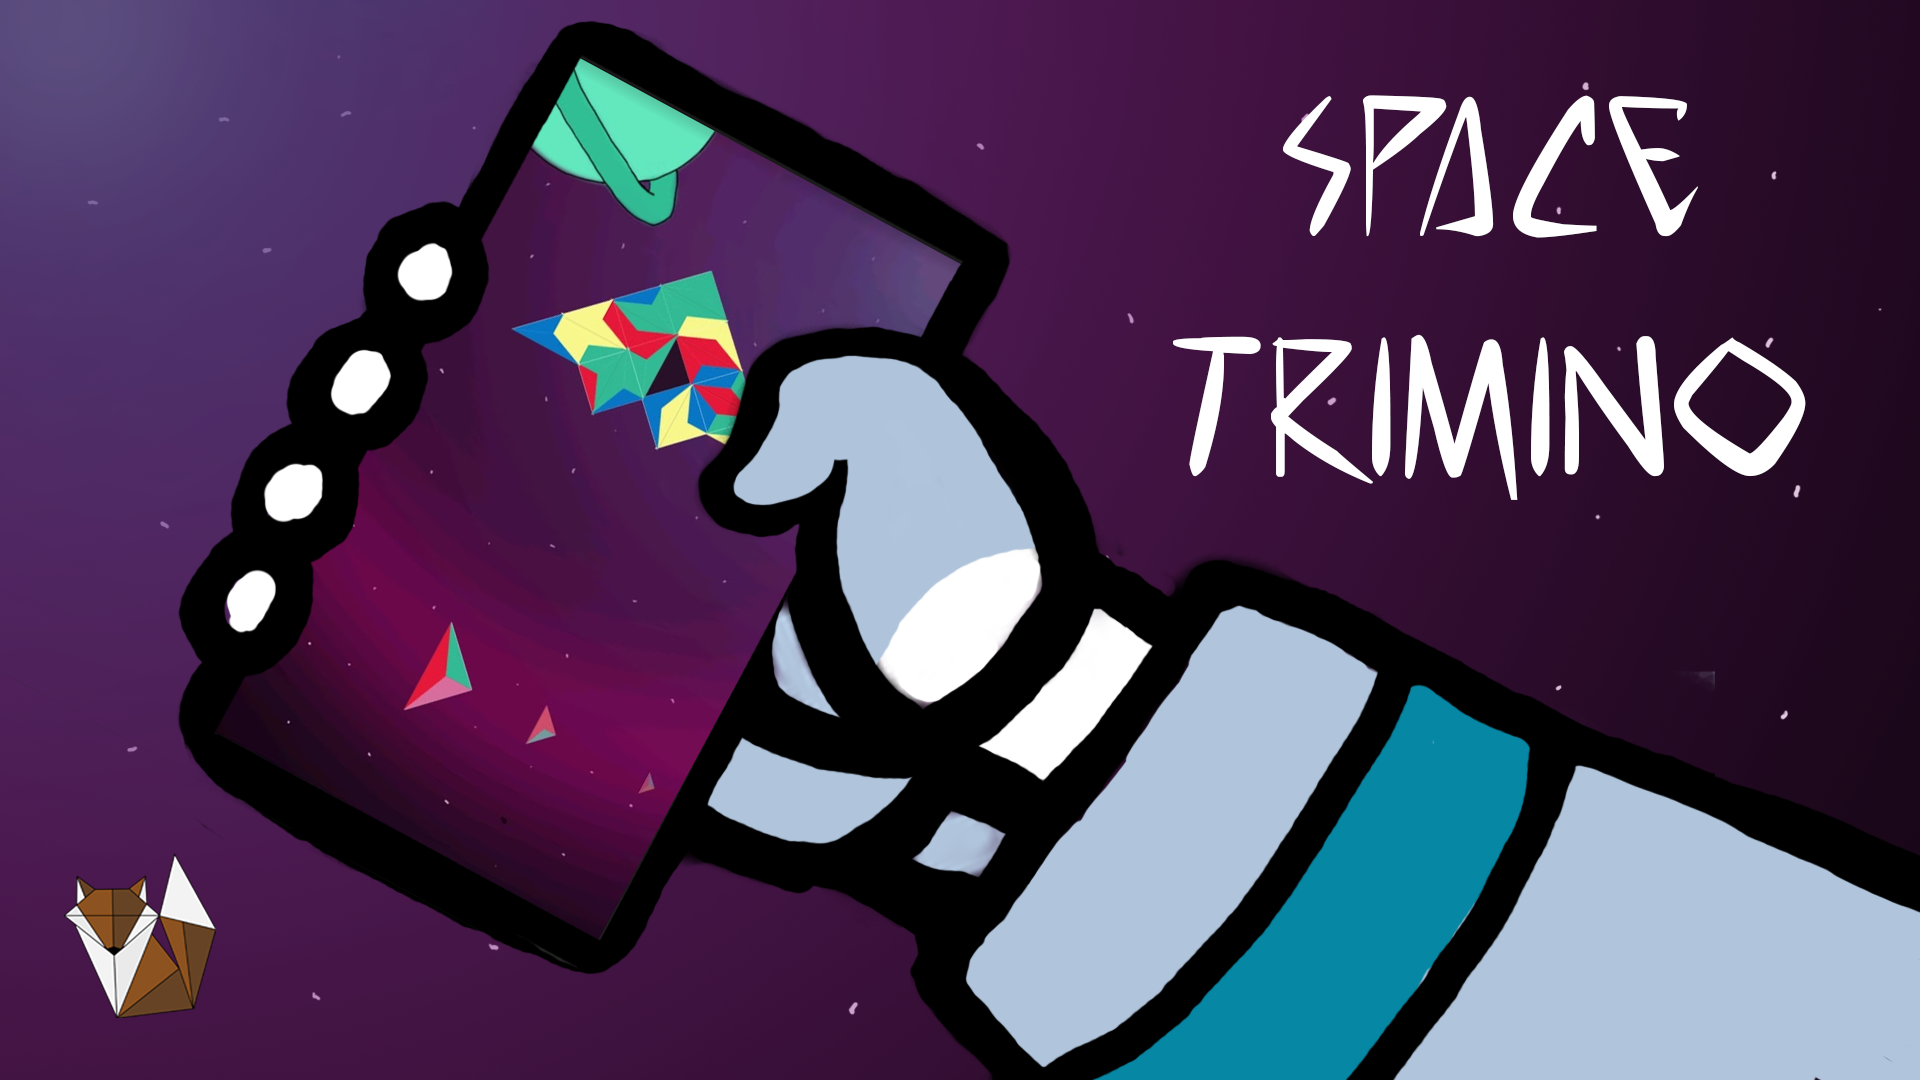 Space Trimino